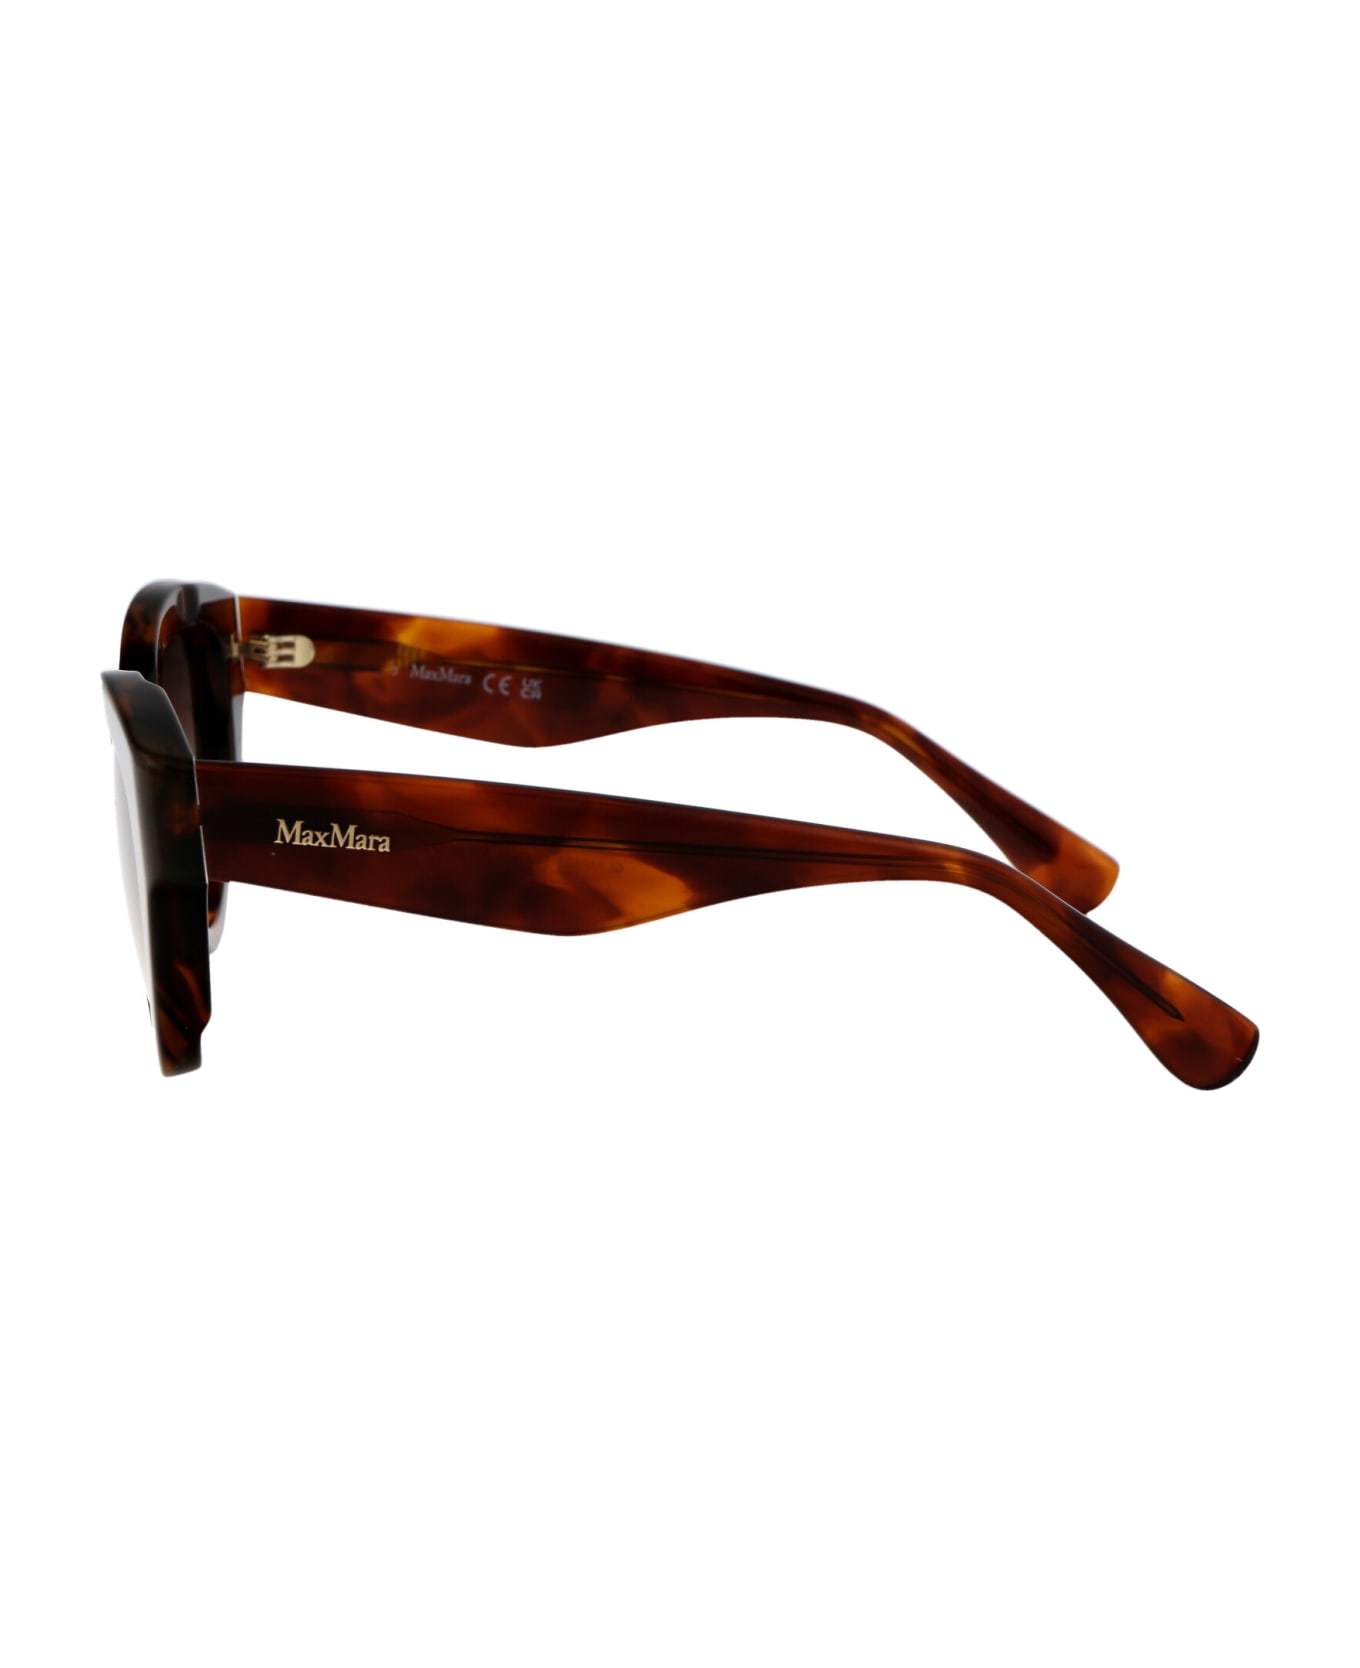 Max Mara Glimpse1 Sunglasses - 53F Avana Bionda/Marrone Grad